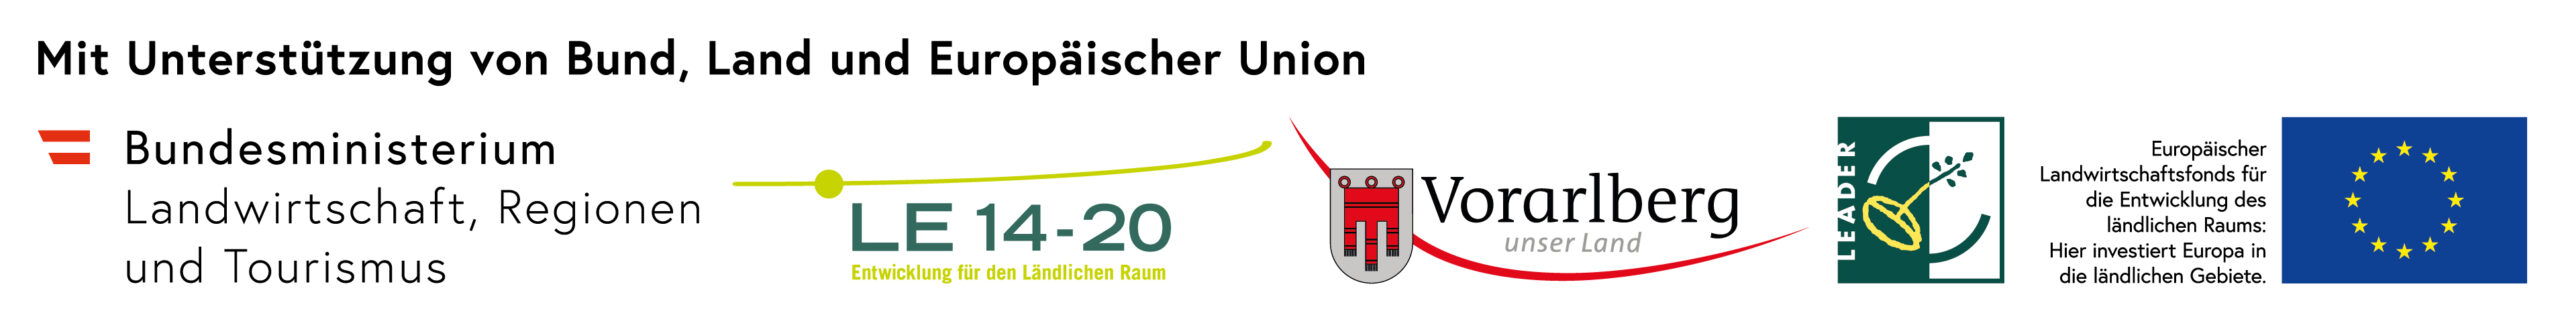 logo_LEADER-Bund-Land-EU_2020[1]